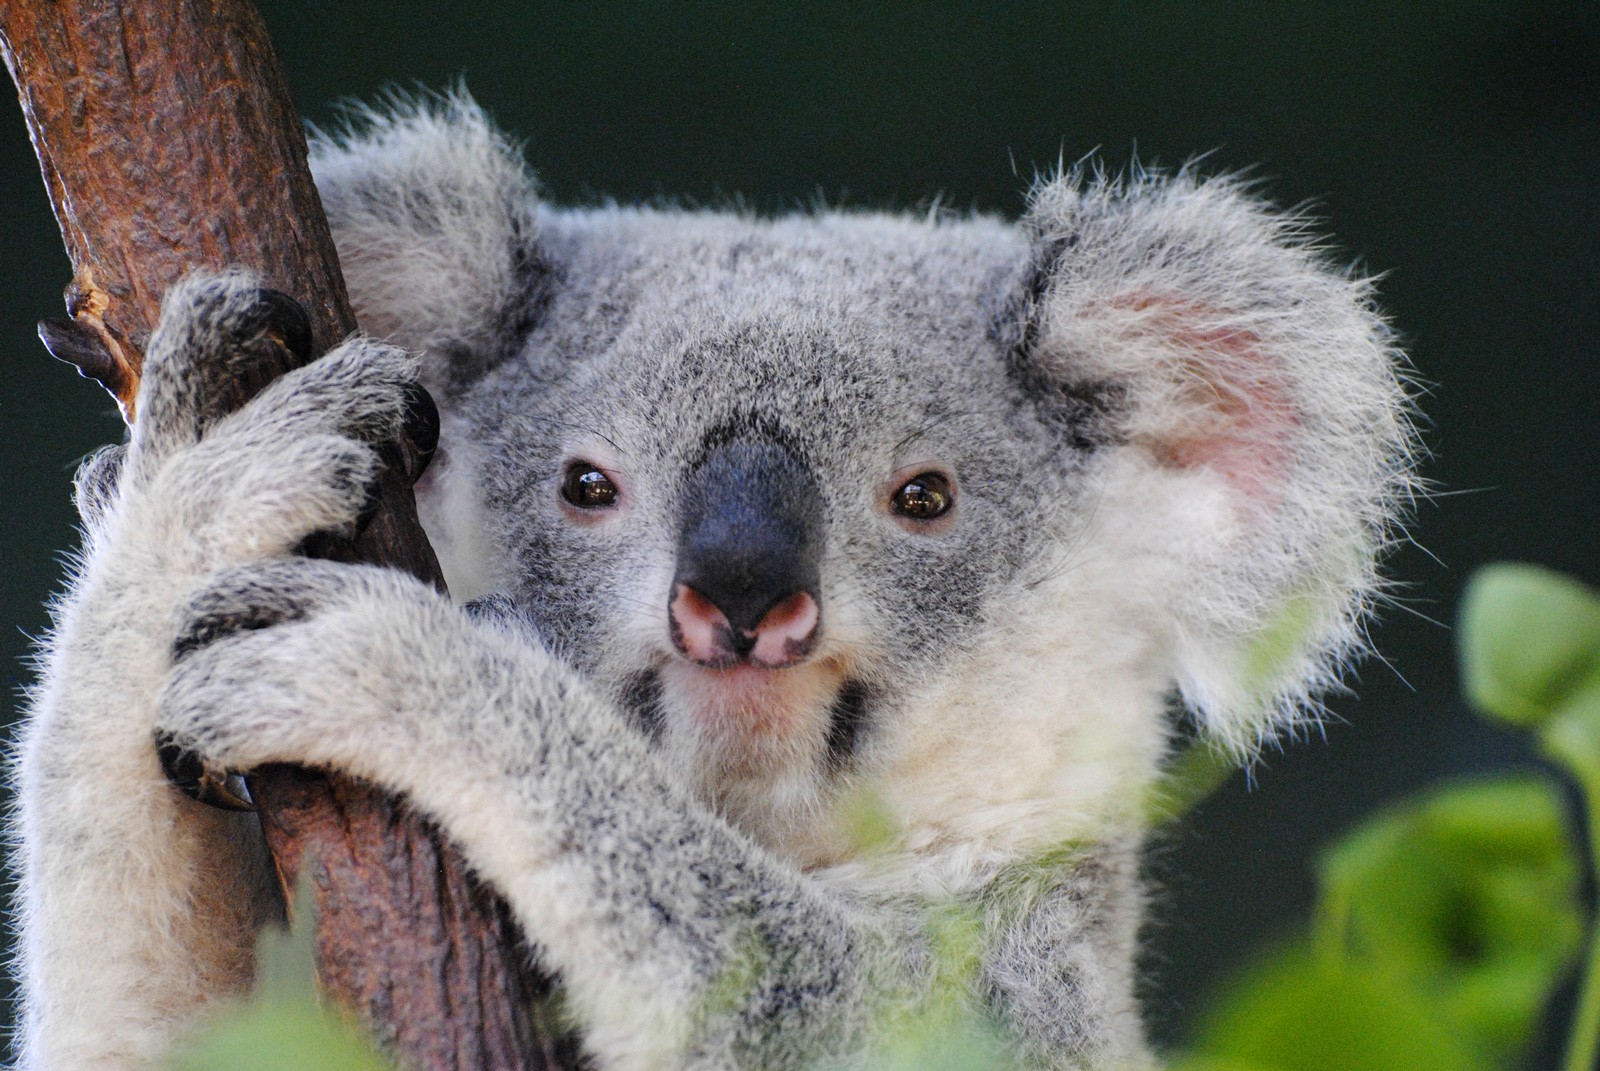 Symbolic Meaning of the Koala